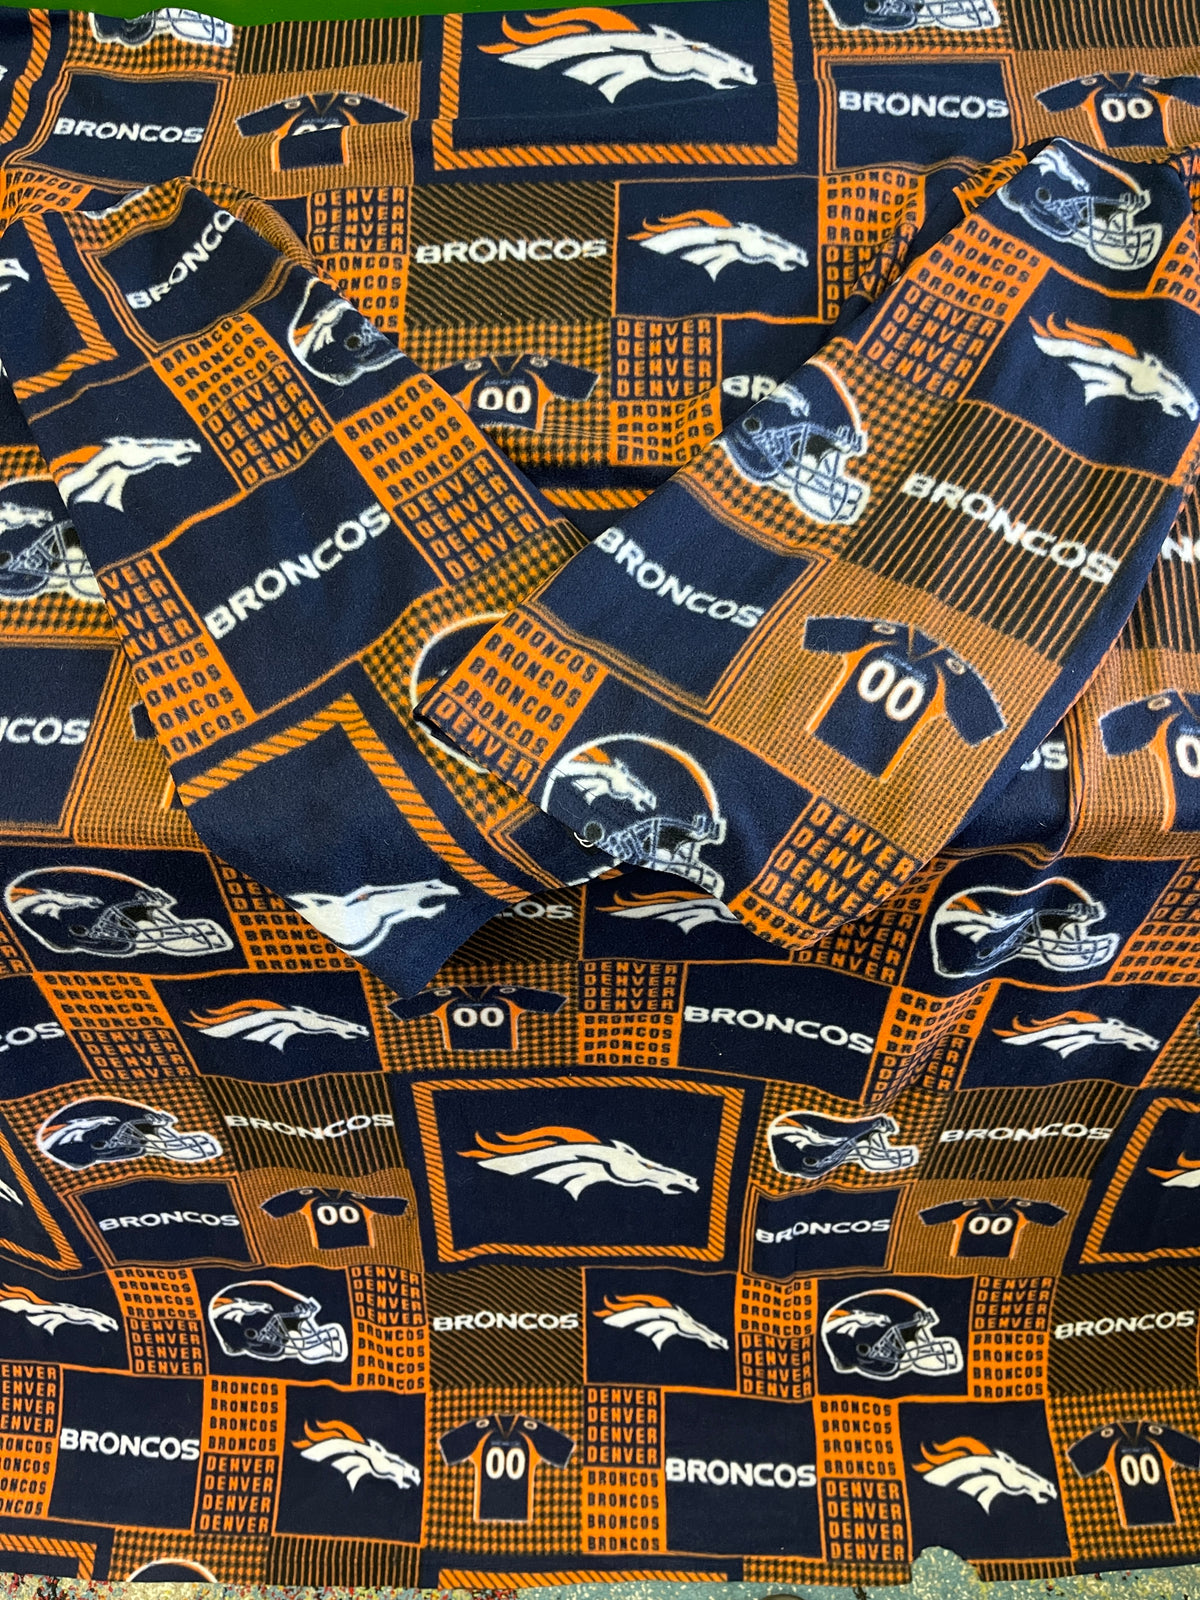 NFL Denver Broncos Snuggie Blanket with Arms